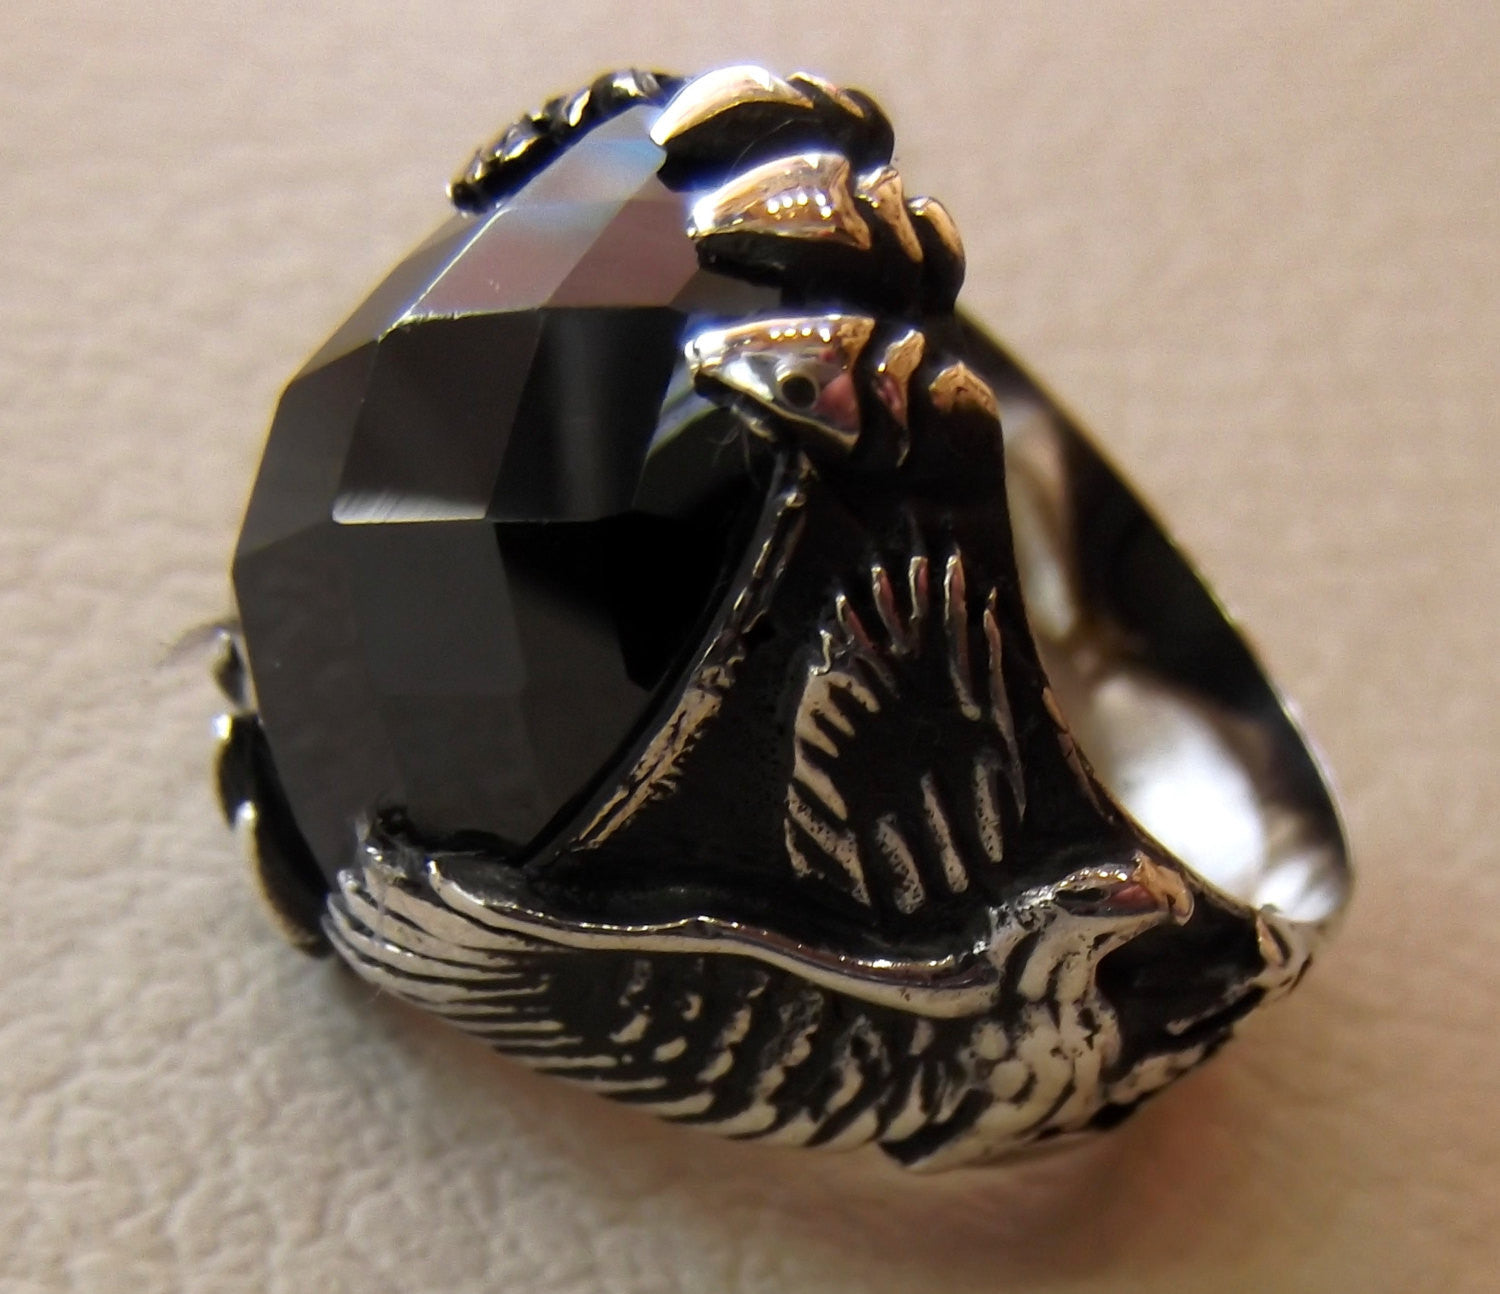 Onyx Eagle Ring schwarz Achat Edelstein Natur Oval Stein Sterling Silber 925 Männer Tier Schmuck jede Größe kostenloser Versand oxidiert antiken Stil